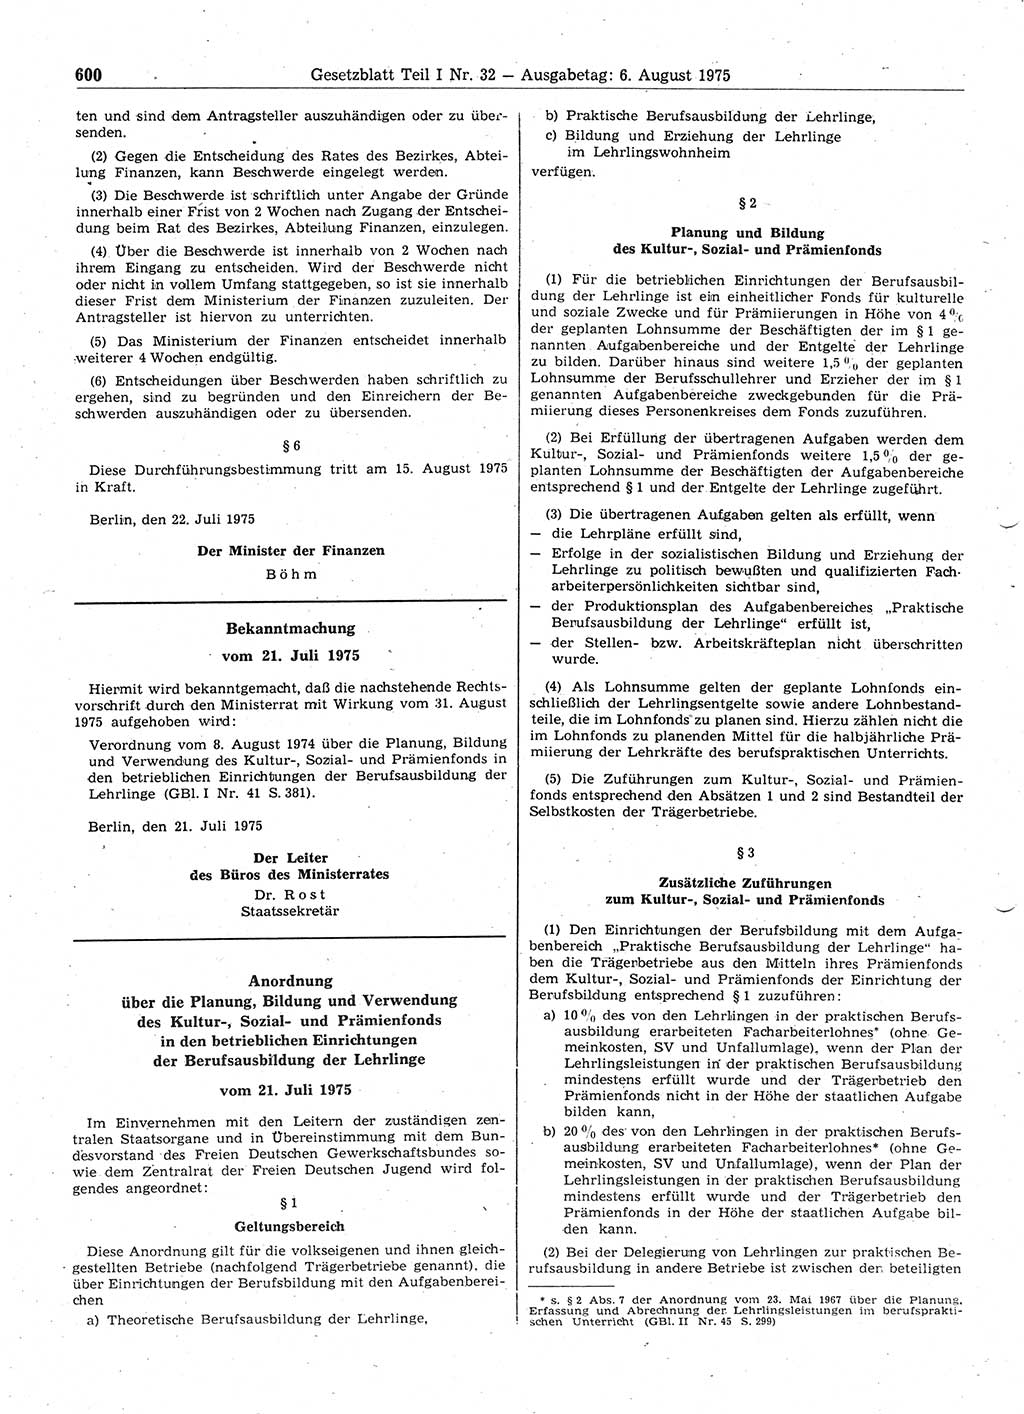 Gesetzblatt (GBl.) der Deutschen Demokratischen Republik (DDR) Teil Ⅰ 1975, Seite 600 (GBl. DDR Ⅰ 1975, S. 600)